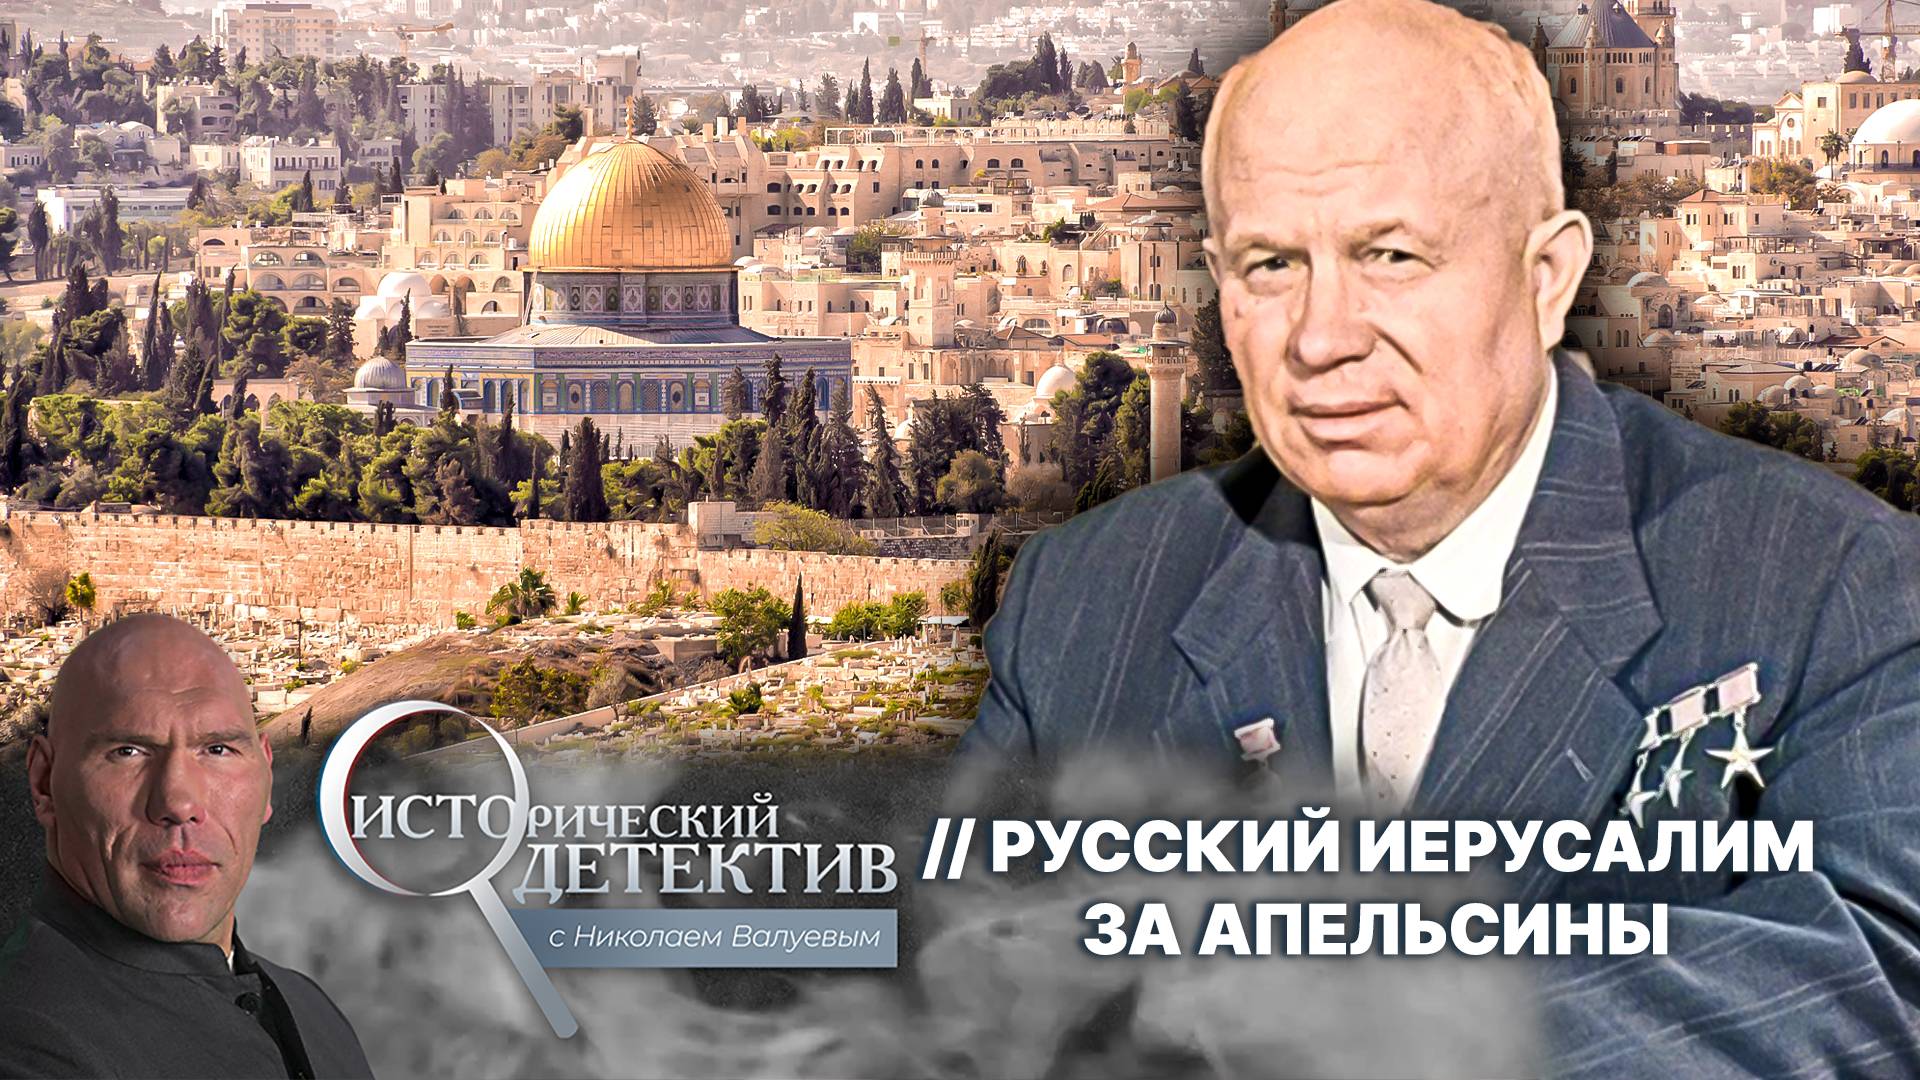 Зачем Хрущев продал за апельсины русскую землю в центре Иерусалима?